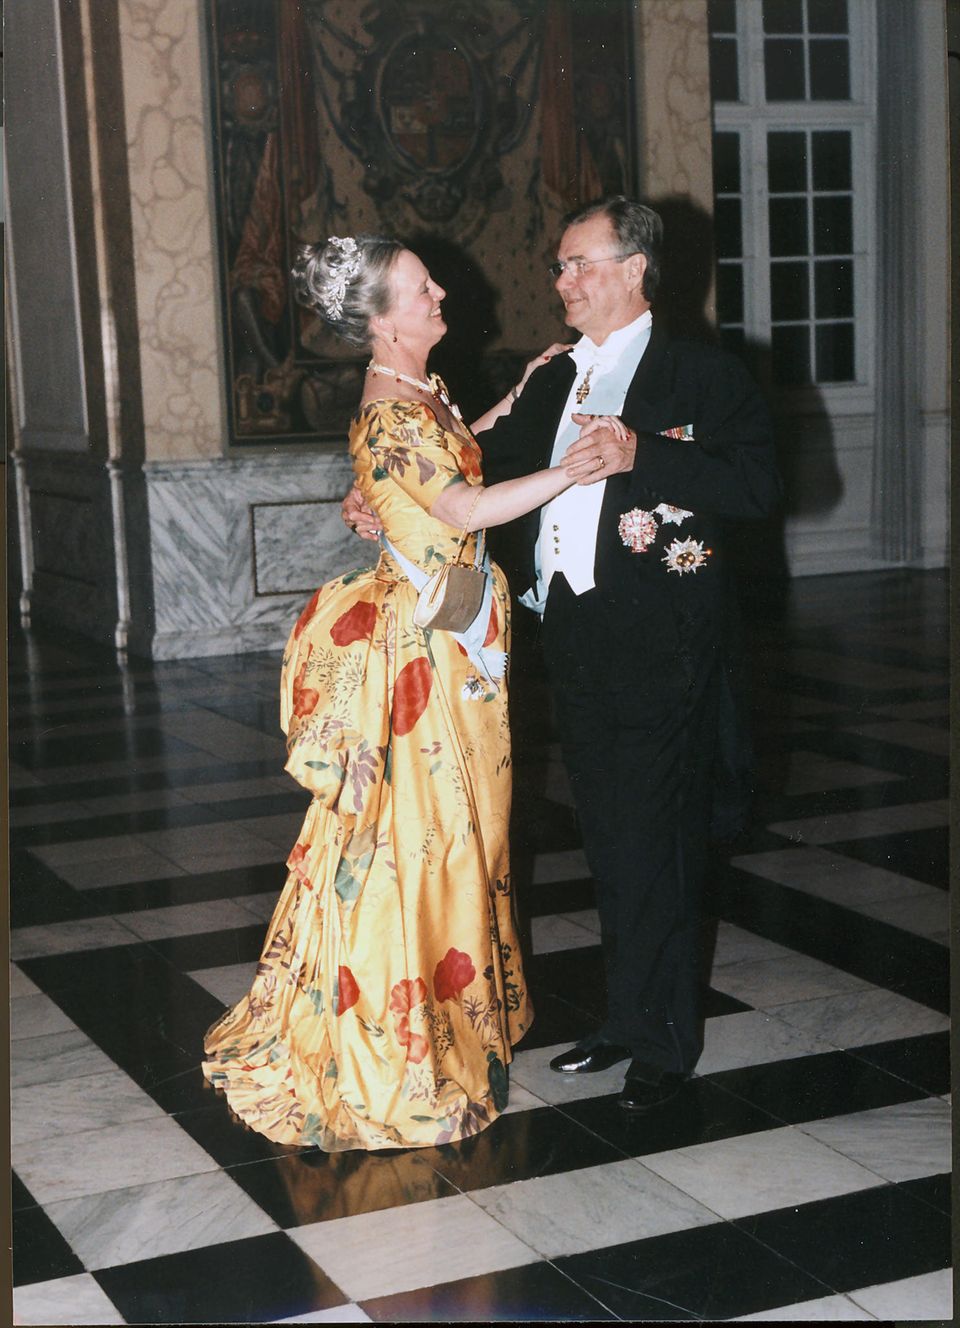 Königin Margrethe beim Fest zu Ehren von Prinz Henriks 60. Geburtstag im Juni 1994 auf Schloss Christiansborg in Kopenhagen.